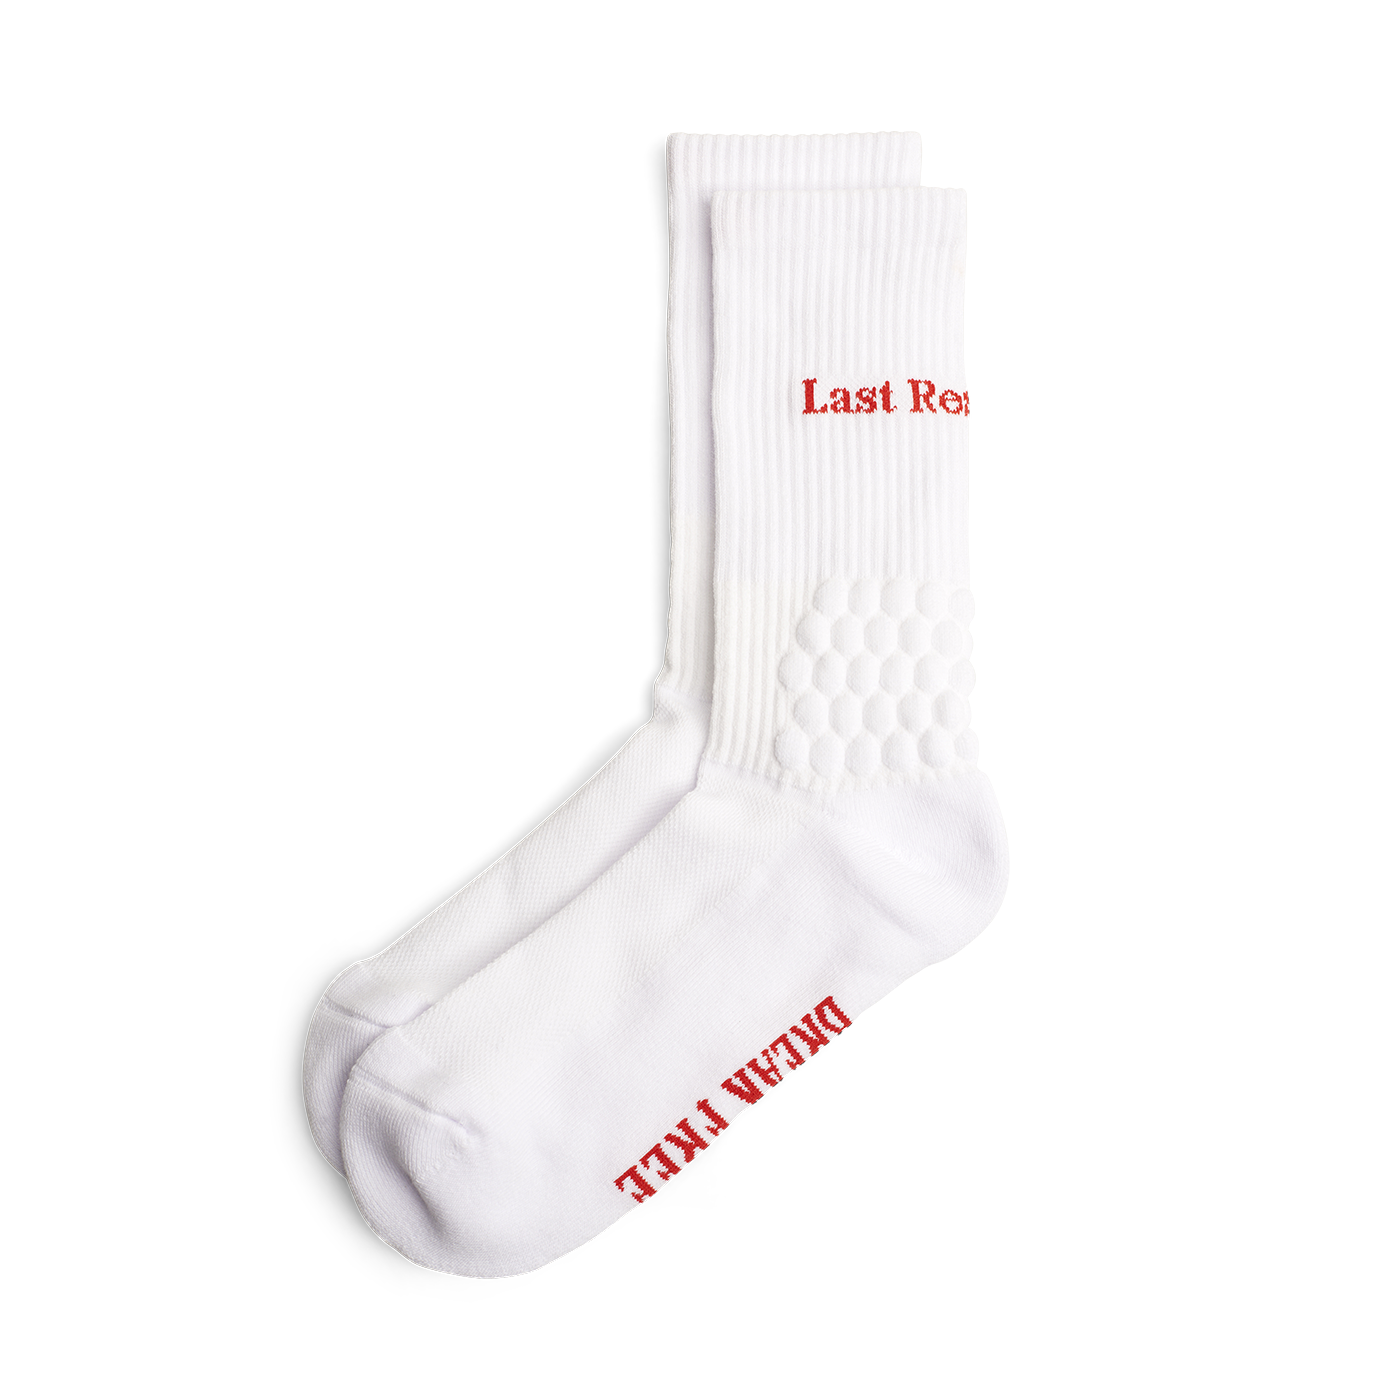 Breakfree Socks, White